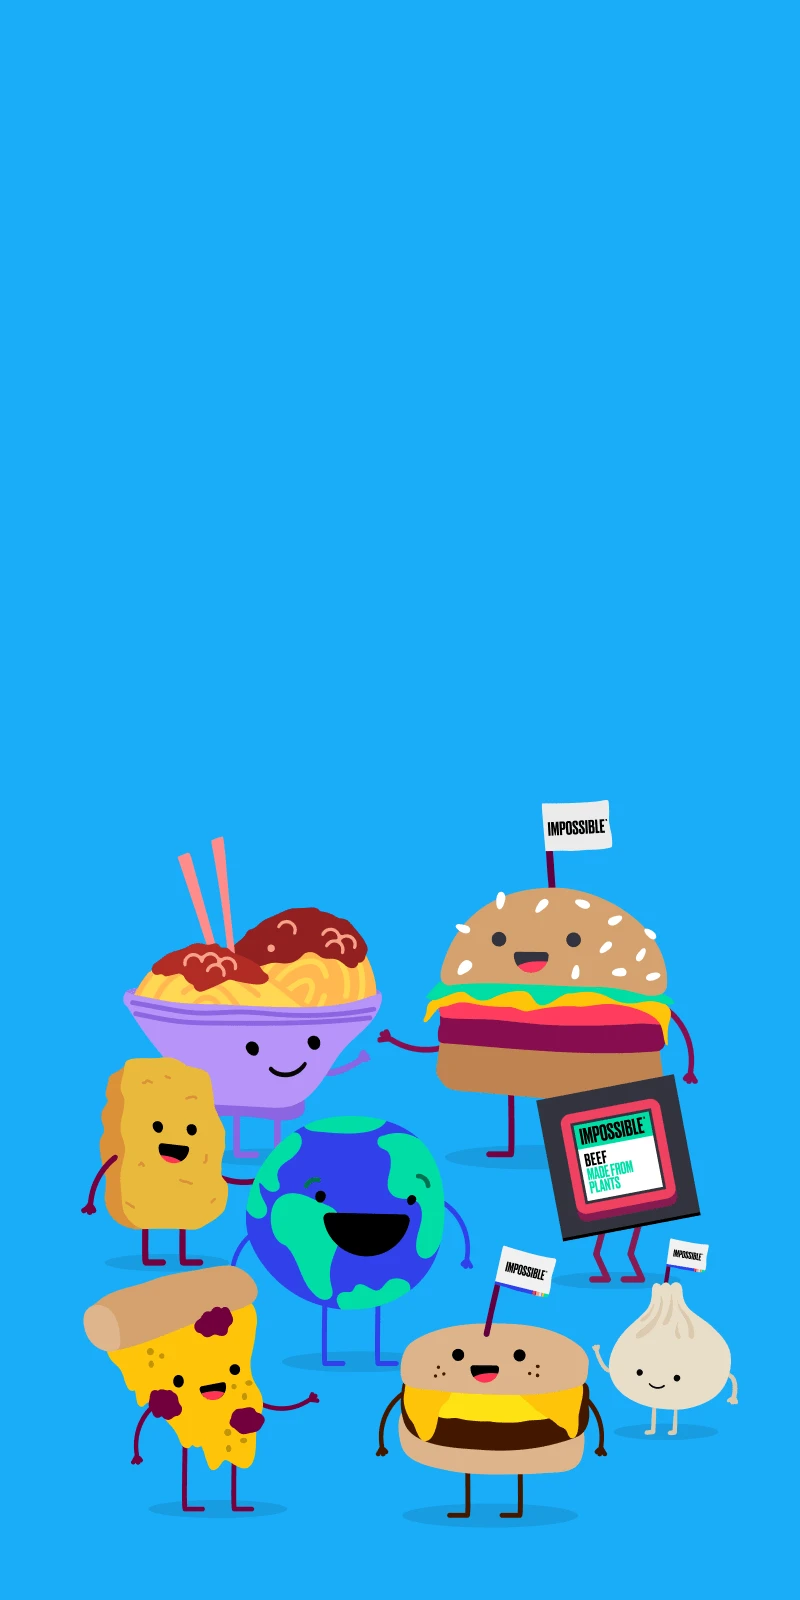 Illustration images of globe, dumpling, bowl of noodles, burger, pizza, sausage